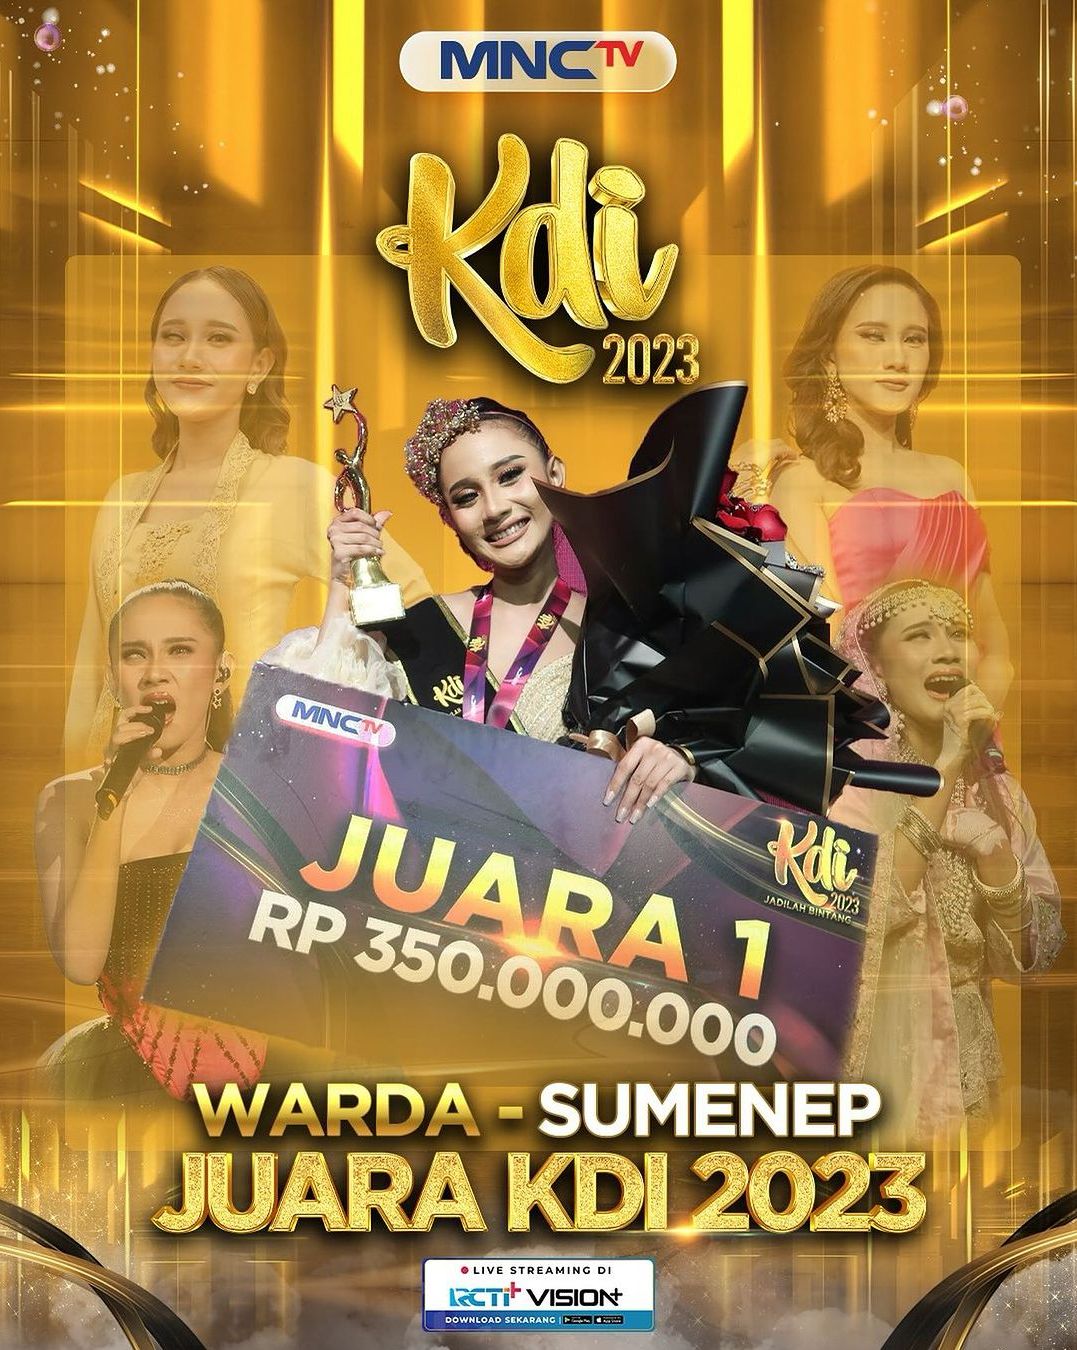  Profil dan biodata Warda asal Pasongsongan Sumenep Madura berhasil juara 1 Kontes Dangdut Indonesia (KDI) 2023